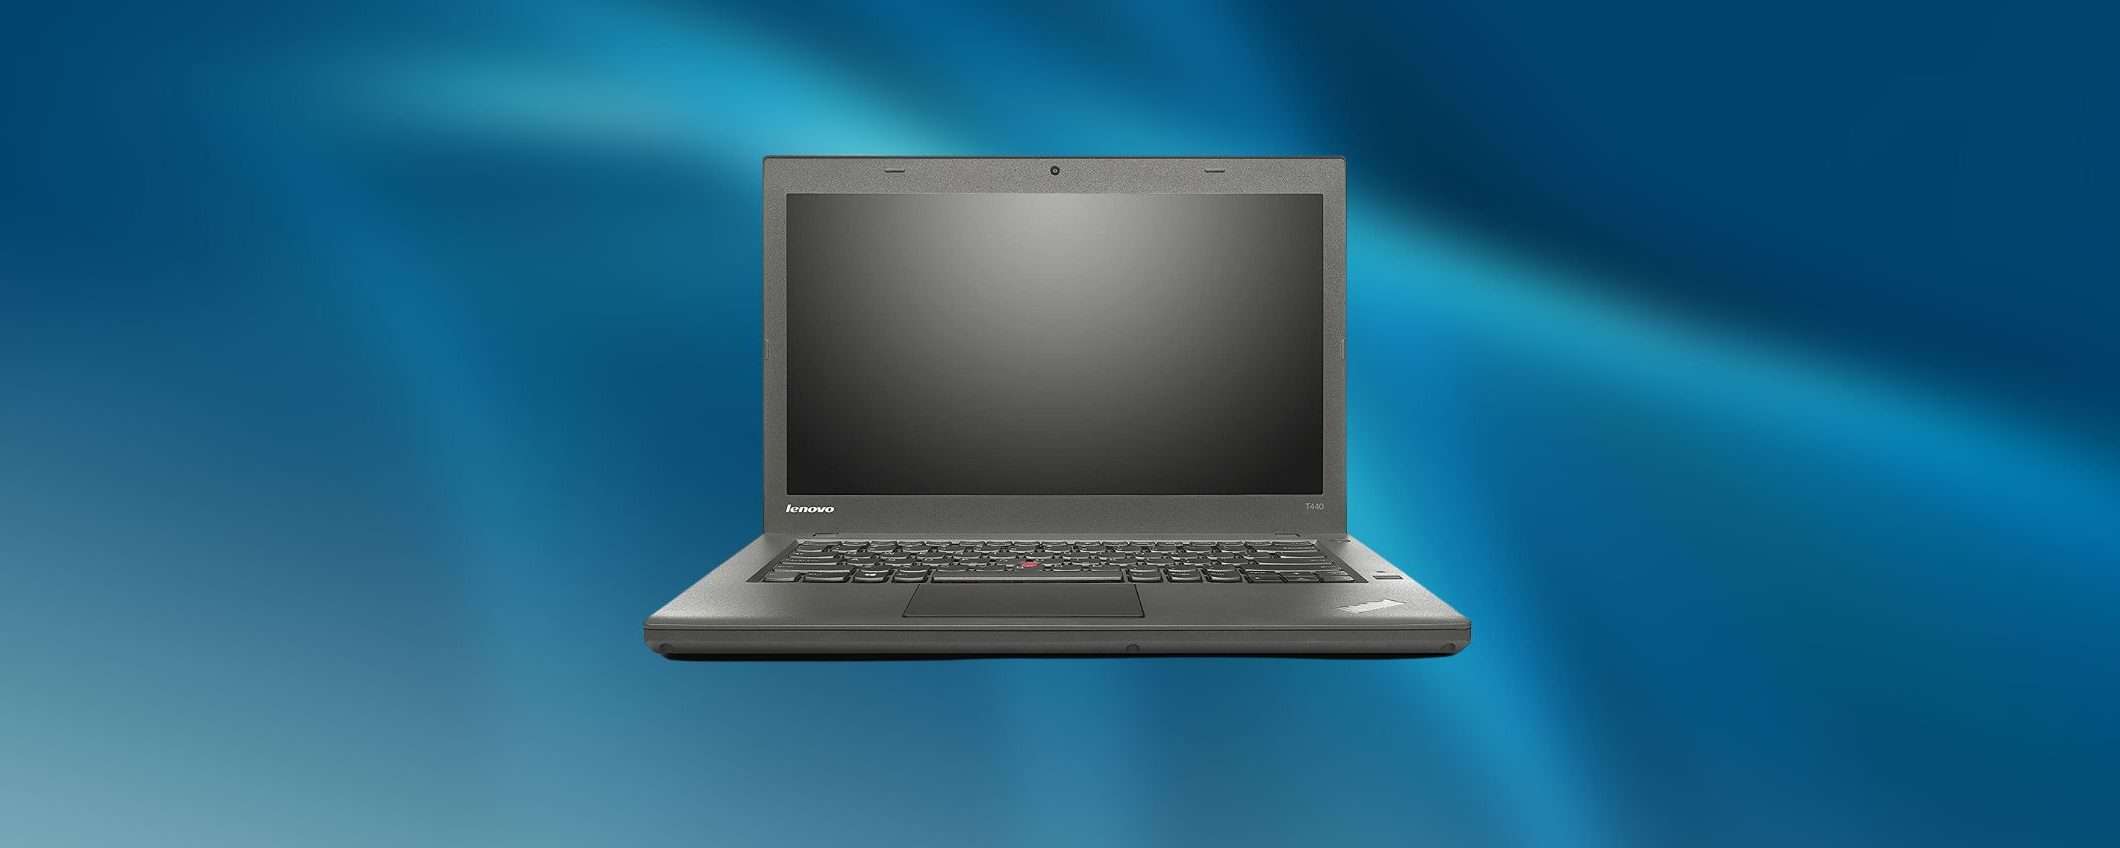 Notebook Lenovo ricondizionati in condizioni eccellenti: solo 229 euro